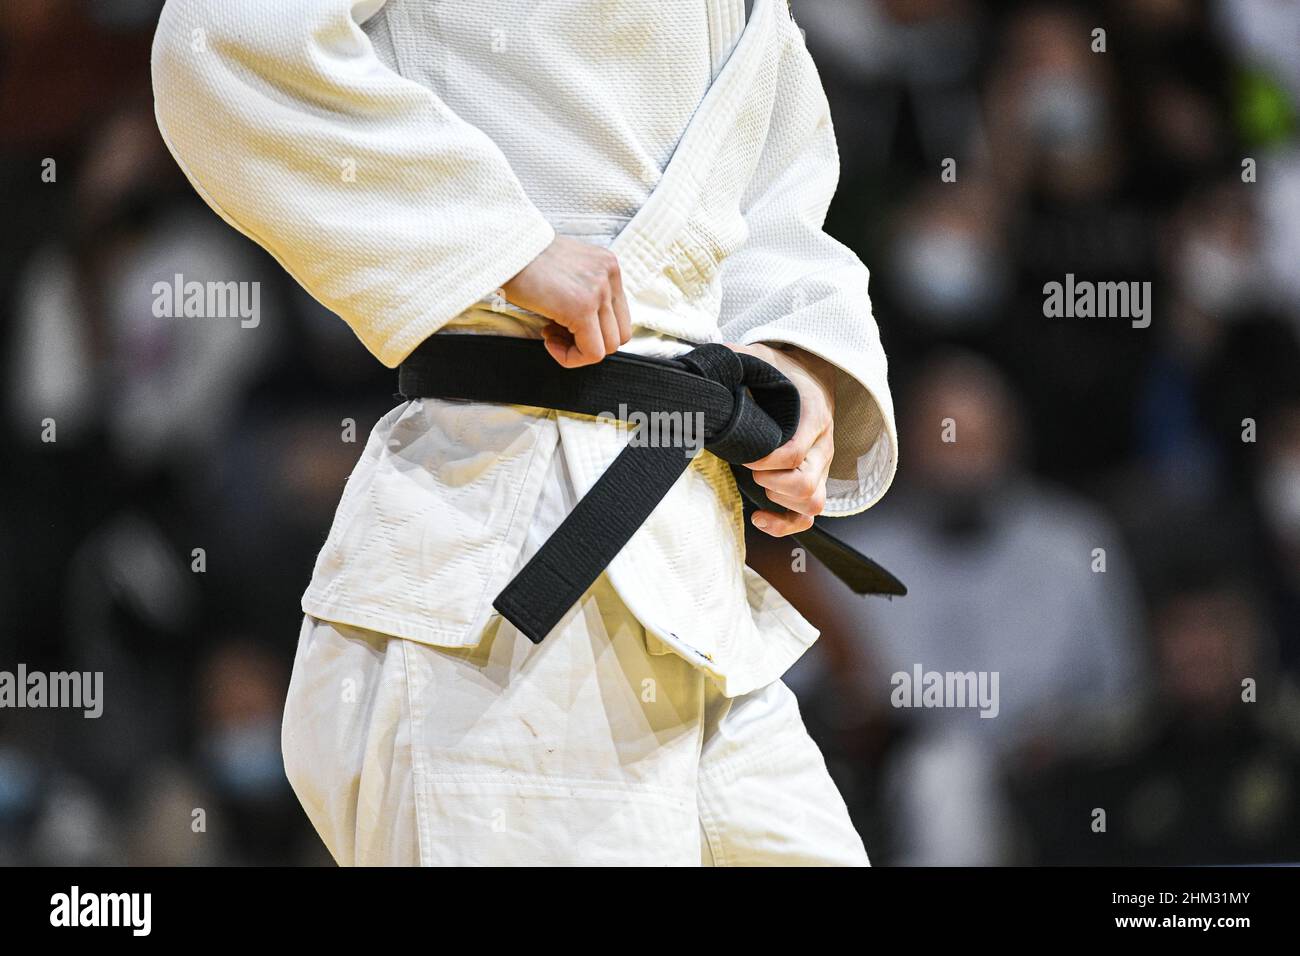 L'immagine mostra un combattente judoka/judo che ripone la cintura nera sul  suo judogi/kimono bianco durante il Grand Slam di Parigi 2022, IJF World  JudoTour il 6 febbraio 2022 presso l'Accor Arena di